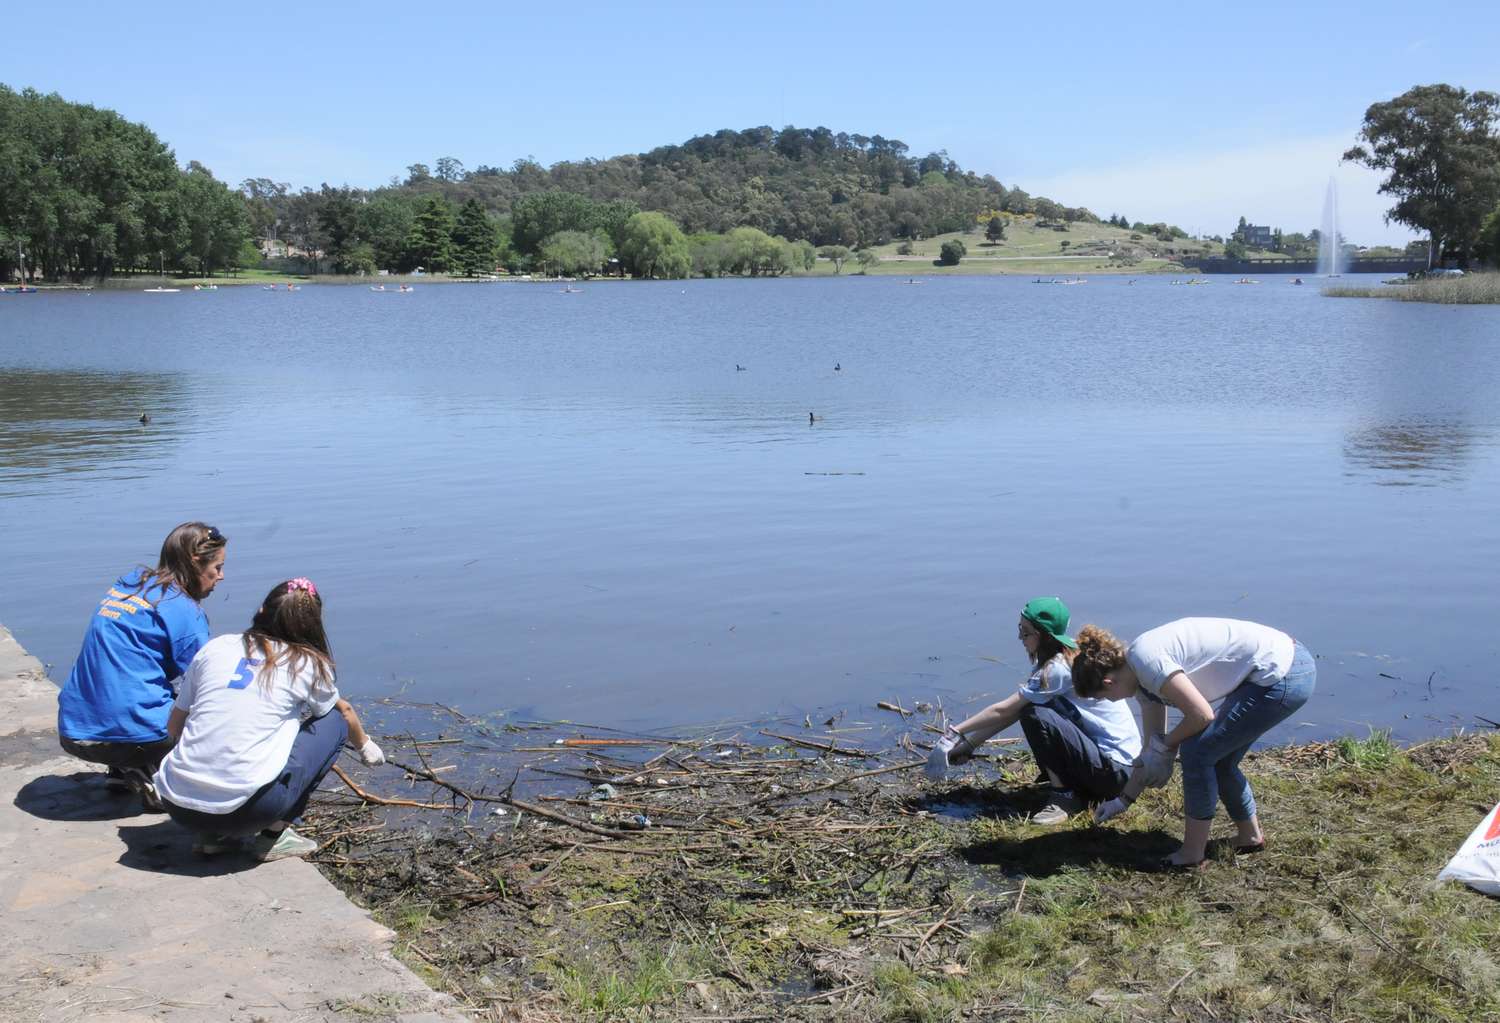 La 6ta jornada de limpieza del lago busca concientizar sobre el medioambiente